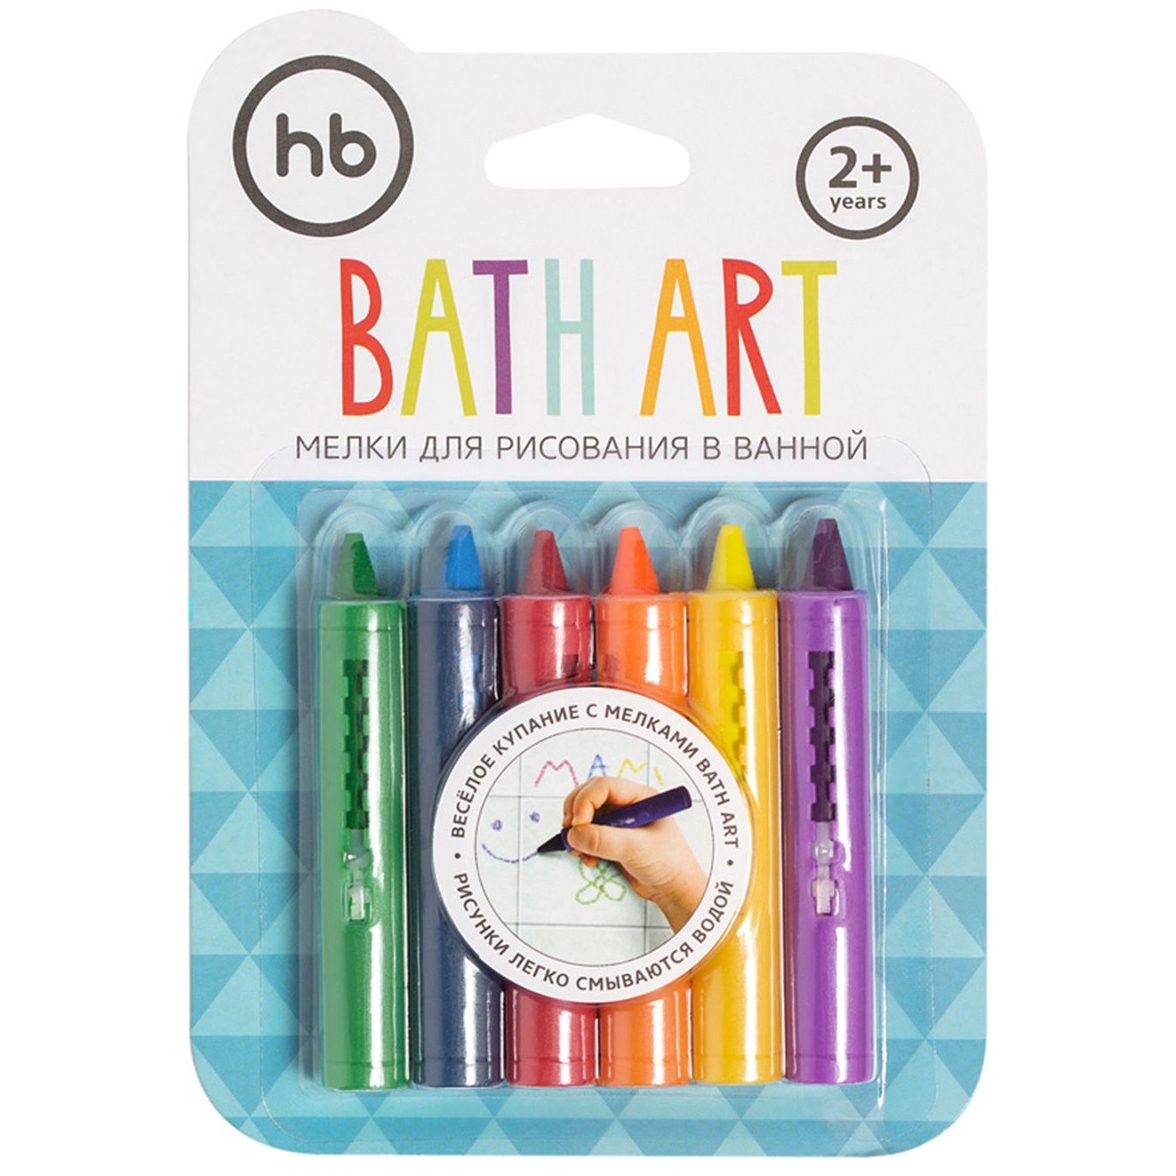 Мелки для рисования в ванной happy baby bath art, 2+ лет, 6 шт. 4560312